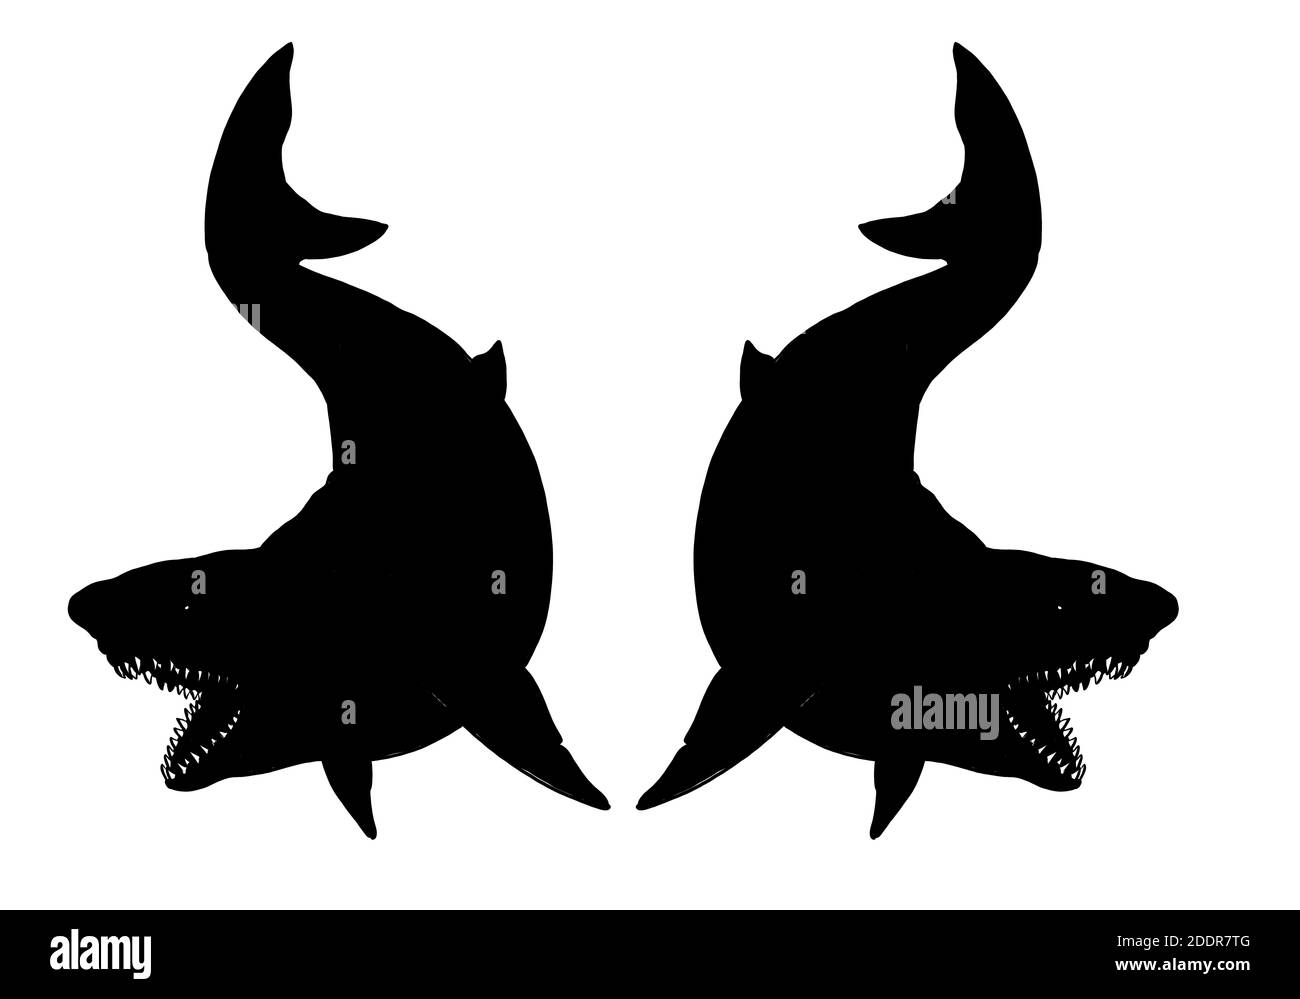 Vorlage für Riesenhaie. Zeichnung großer Haie. Monster Megalodon Illustration. Stockfoto